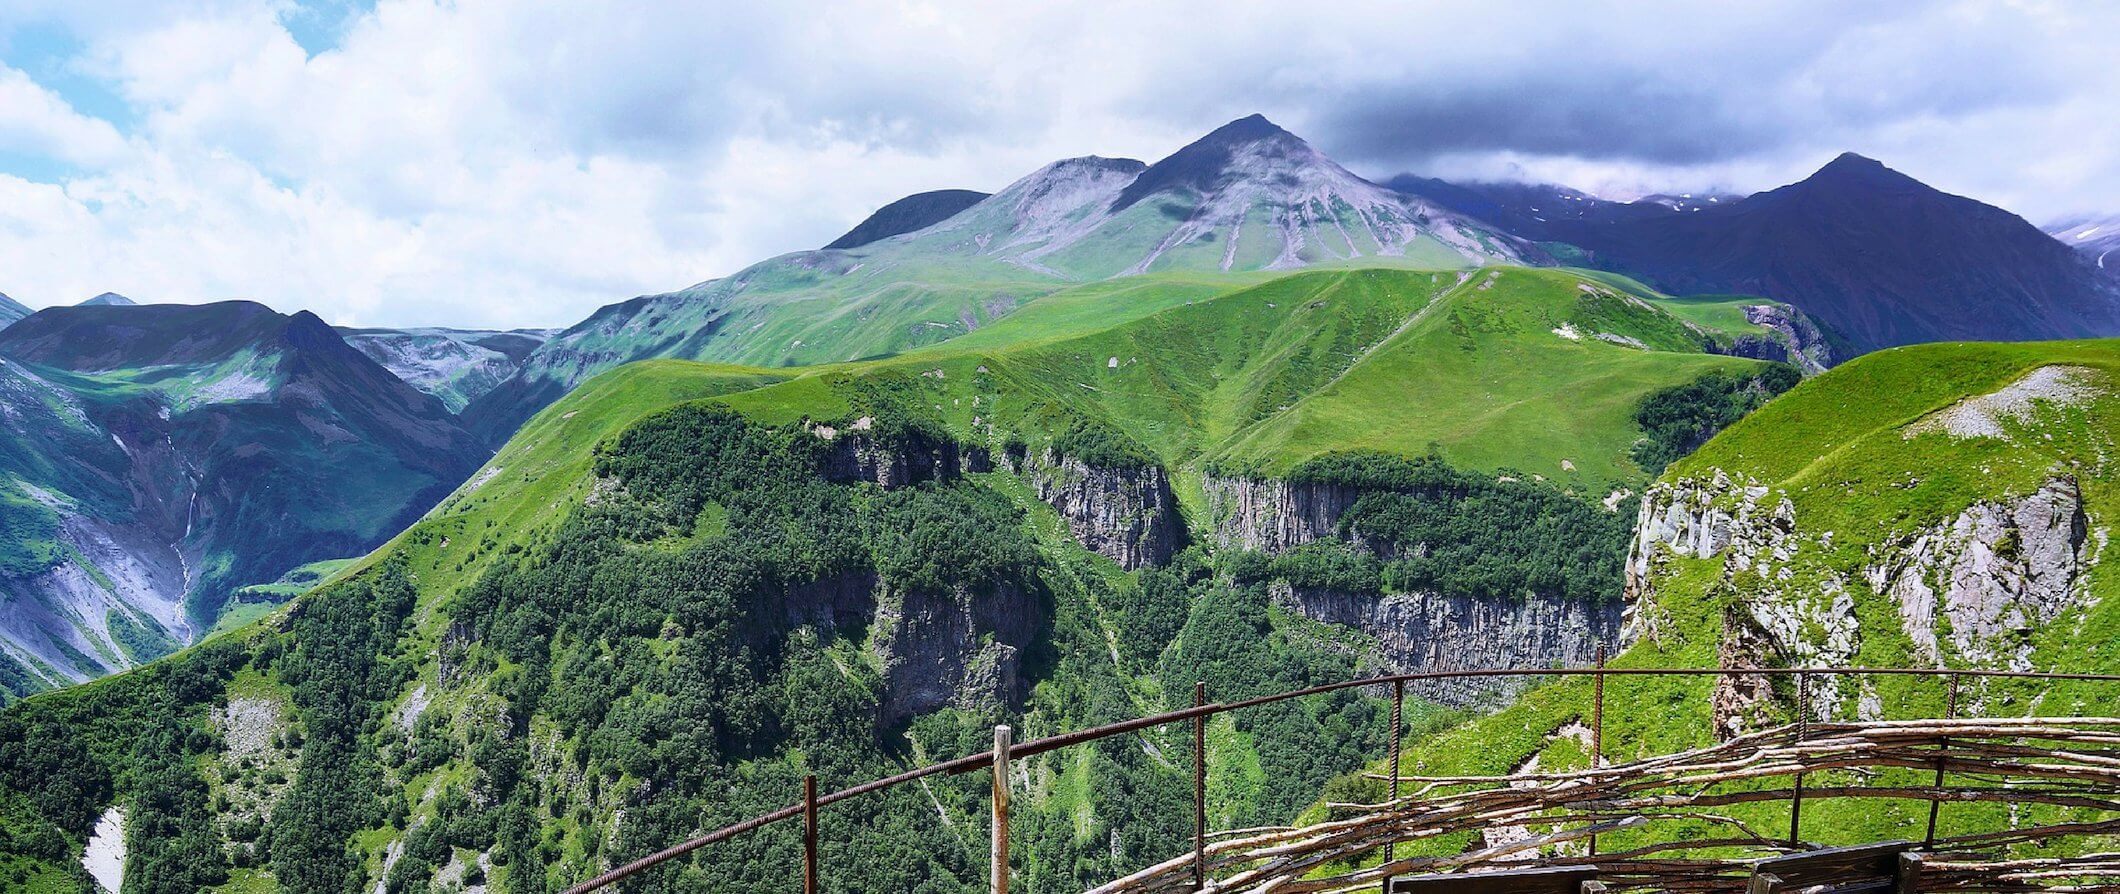 The mountainous landscape of Georgia